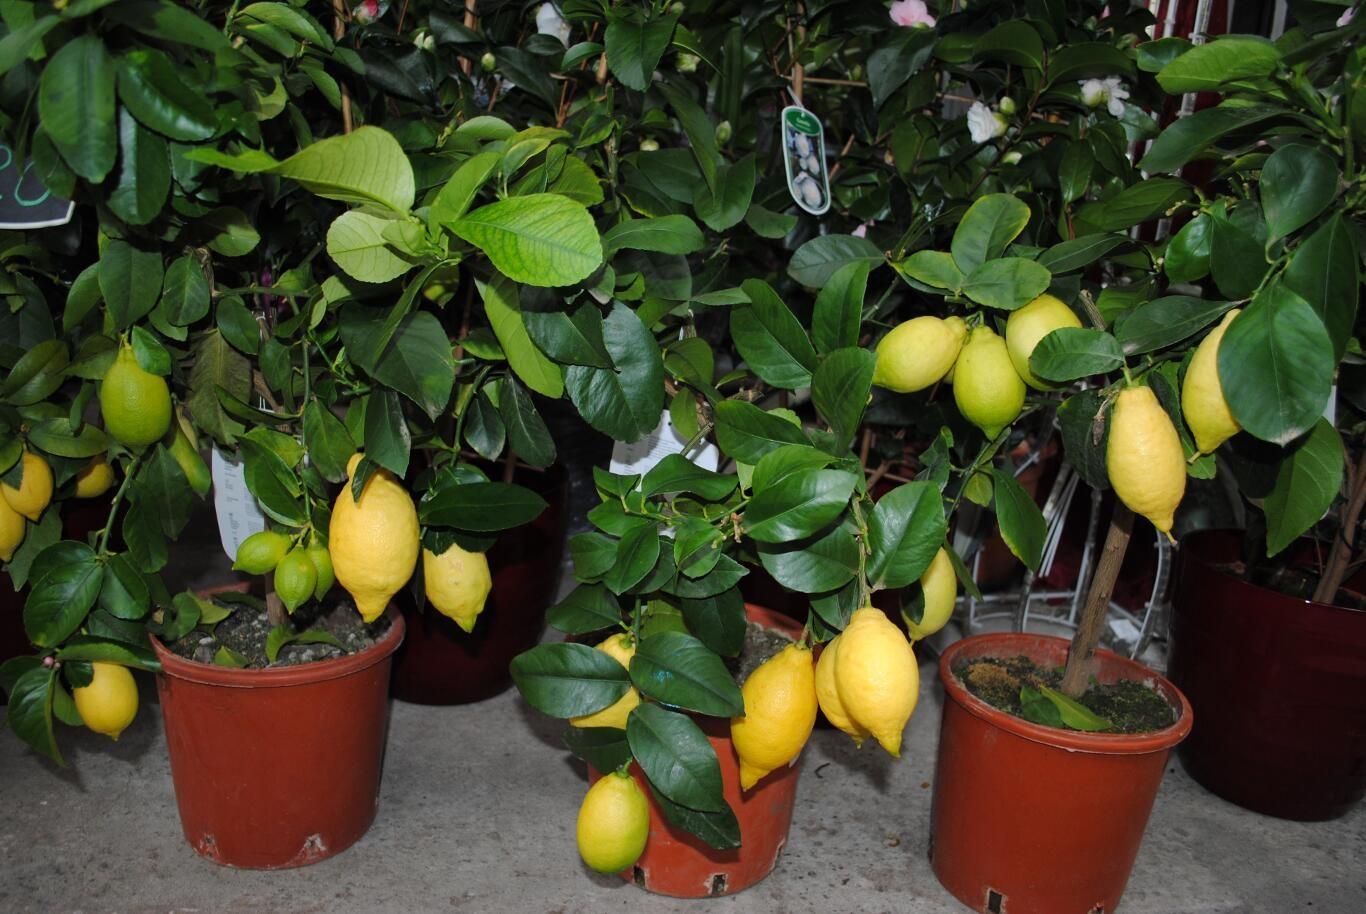 Комнатные плодовые. Листья лимона Лунарио. Цитрус (комнатное растение) лимон Лунарио. Сорт лимона Лунарио. Лимон Мейера куст.